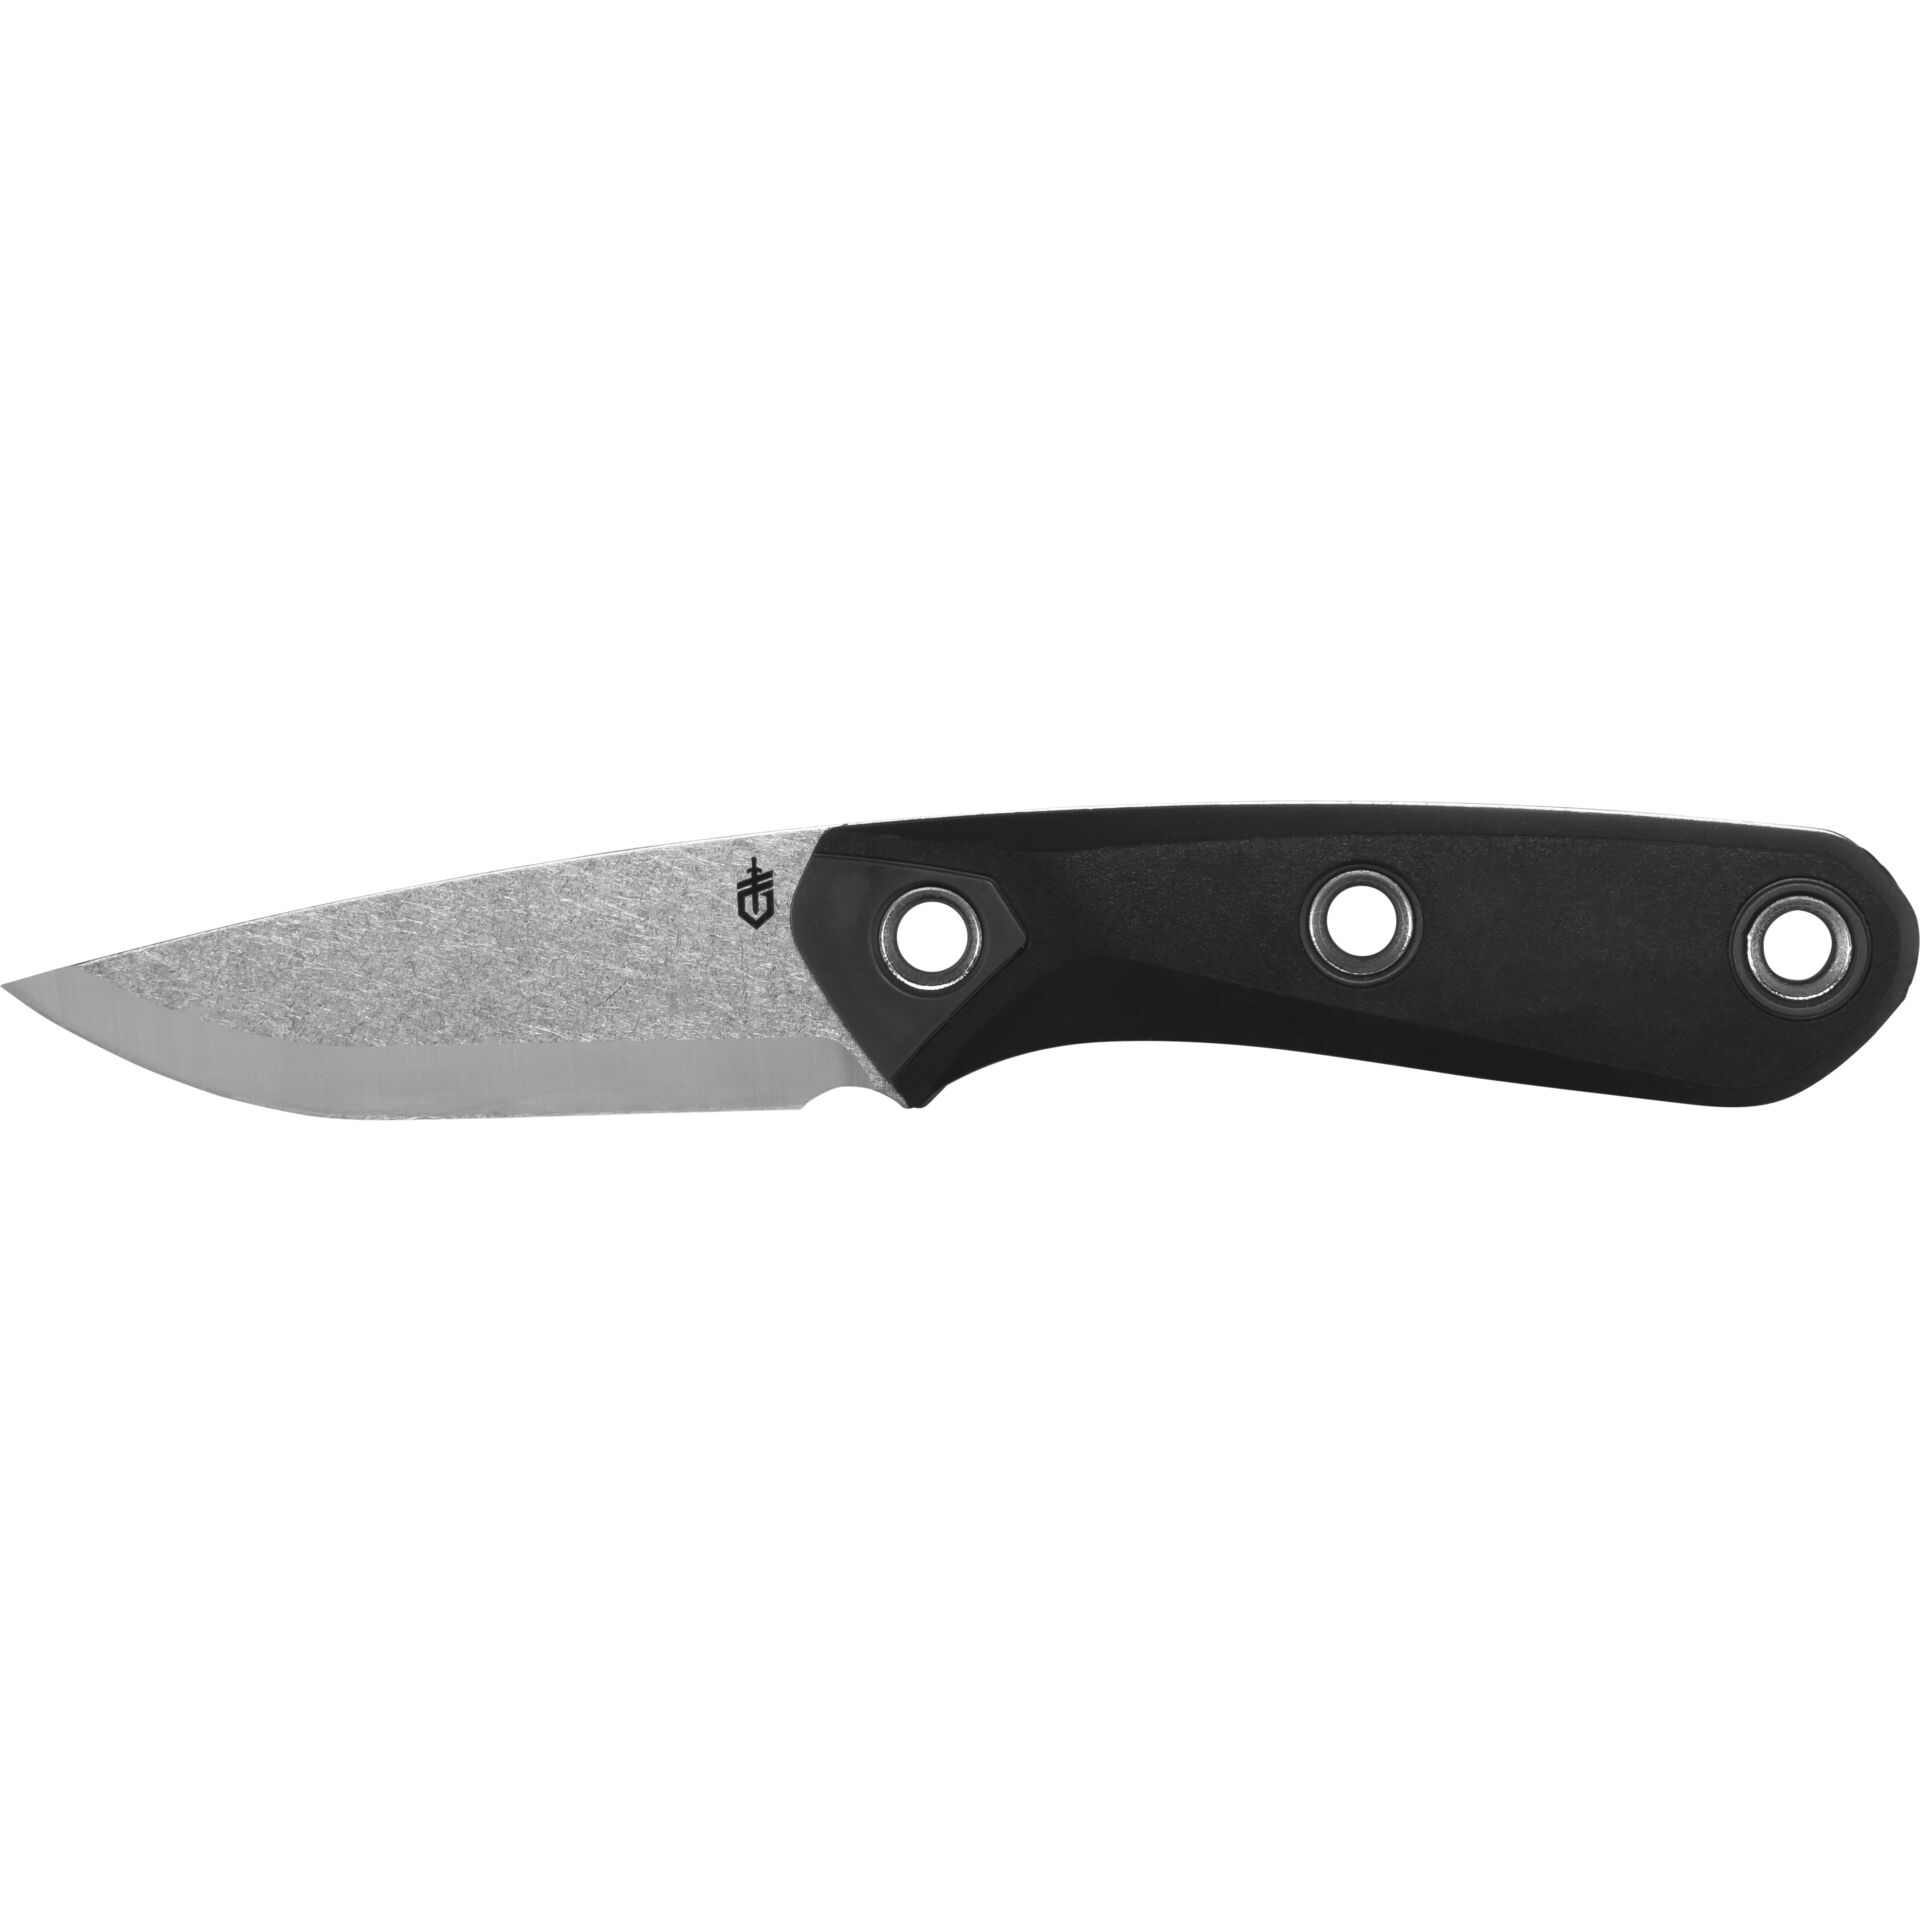 Gerber Principle Bushcraft Black Outdoor Knife black